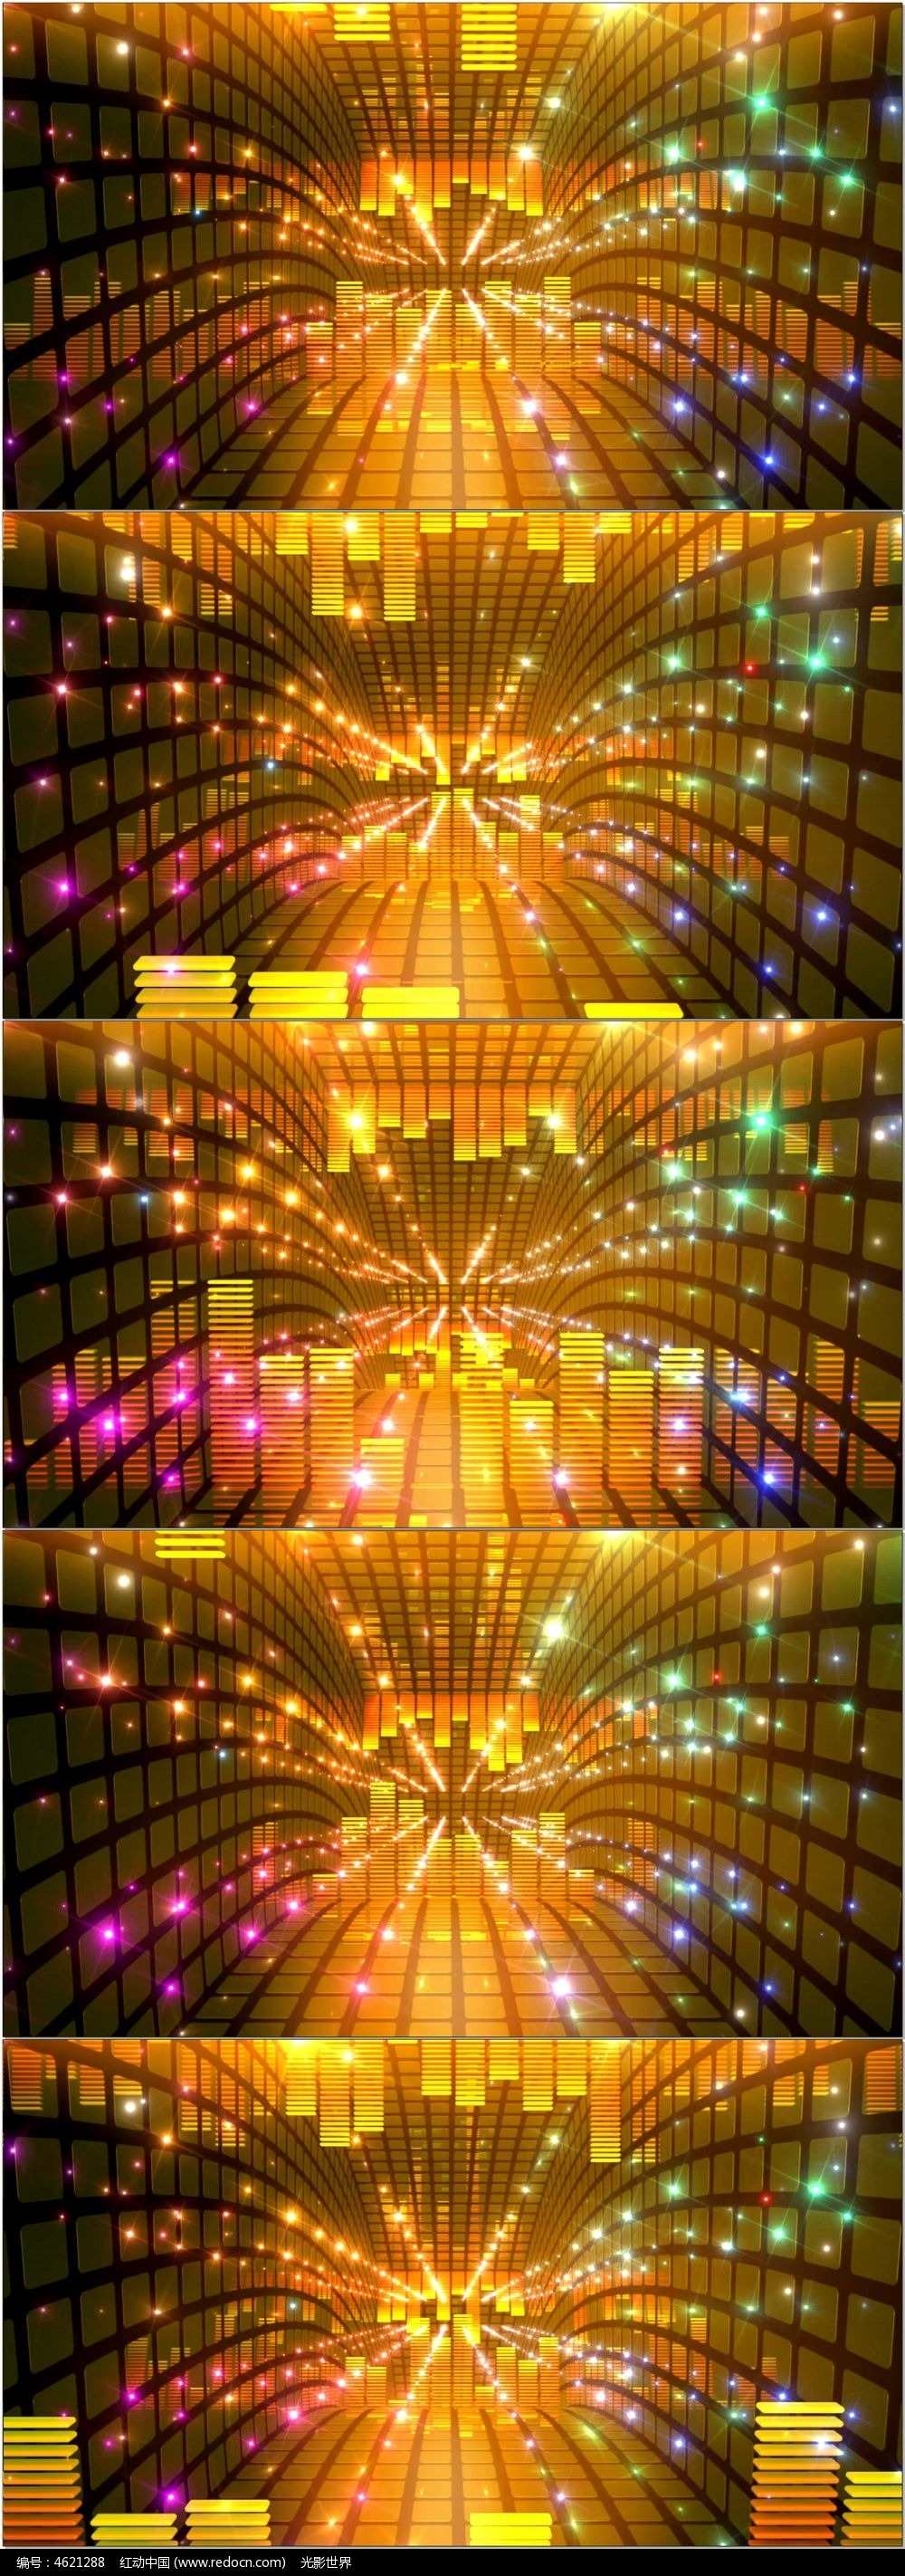 琼海ddr在哪里有 琼海市DDR神秘游戏机揭秘：动感空间内的舞蹈盛宴  第4张